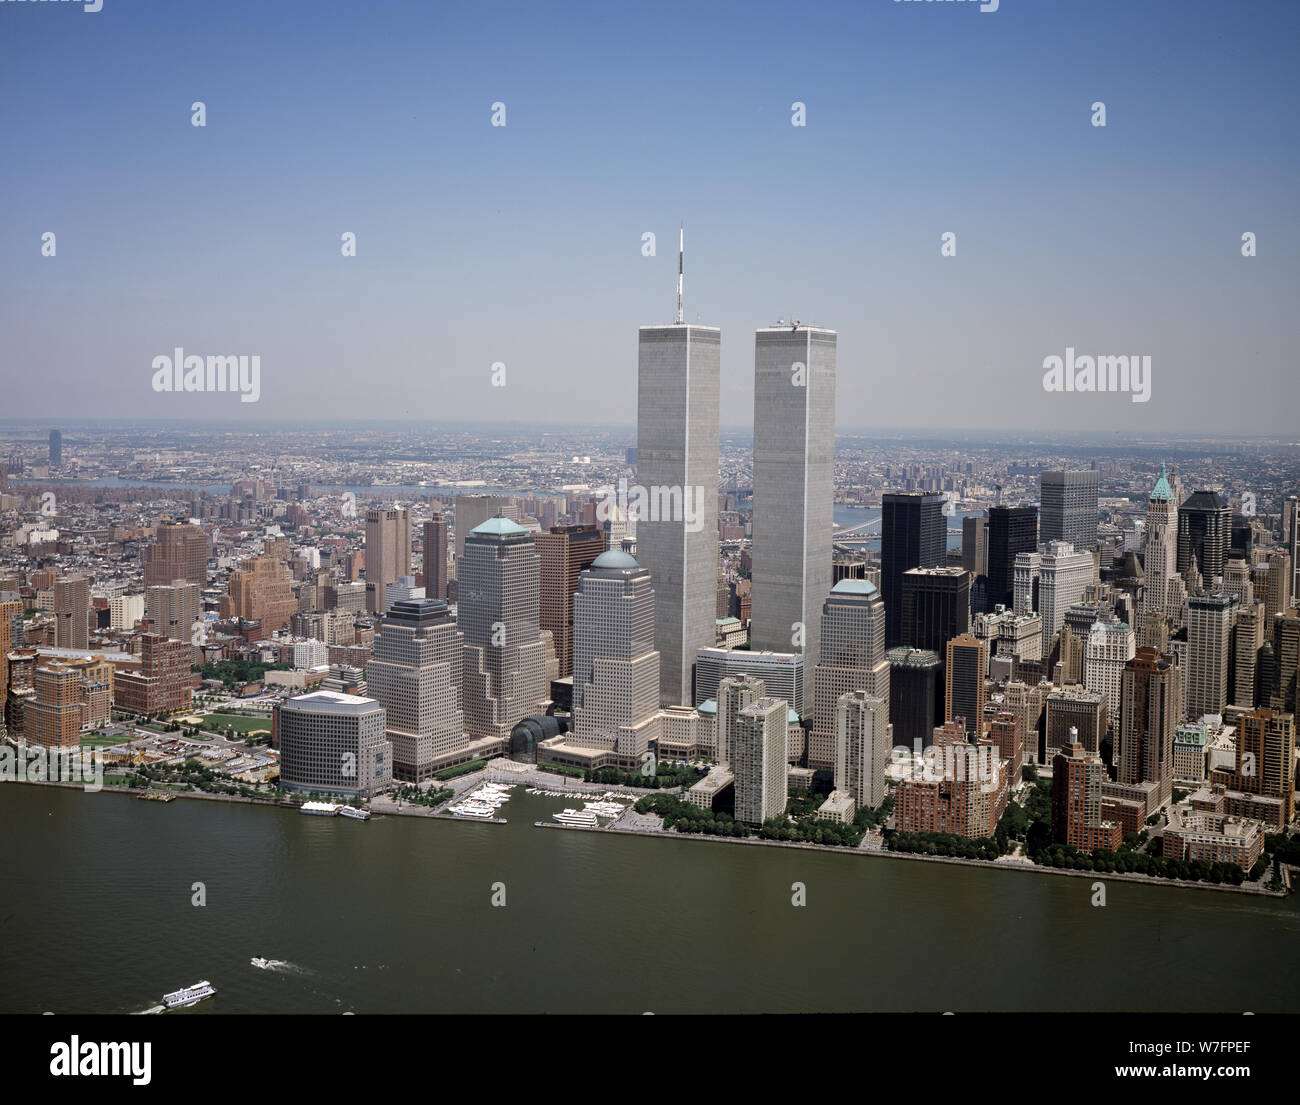 Luftaufnahme von New York City, in der das World Trade Center Twin Towers prominent ist Stockfoto